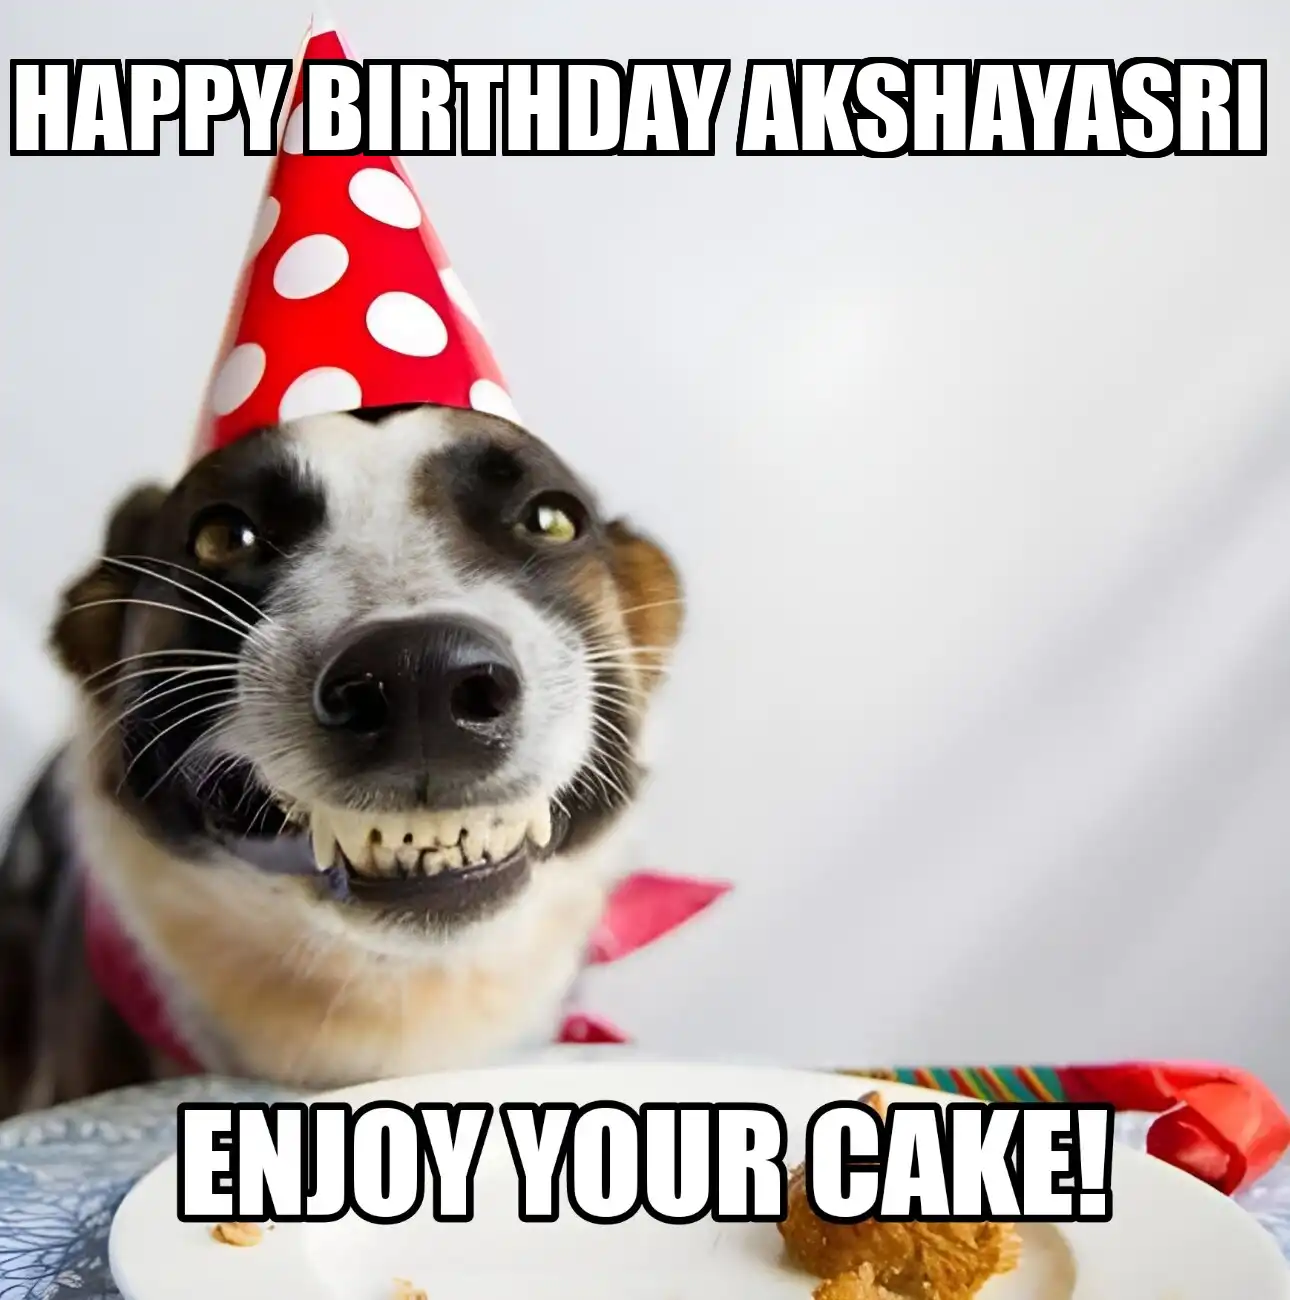 Happy Birthday Akshayasri Enjoy Your Cake Dog Meme